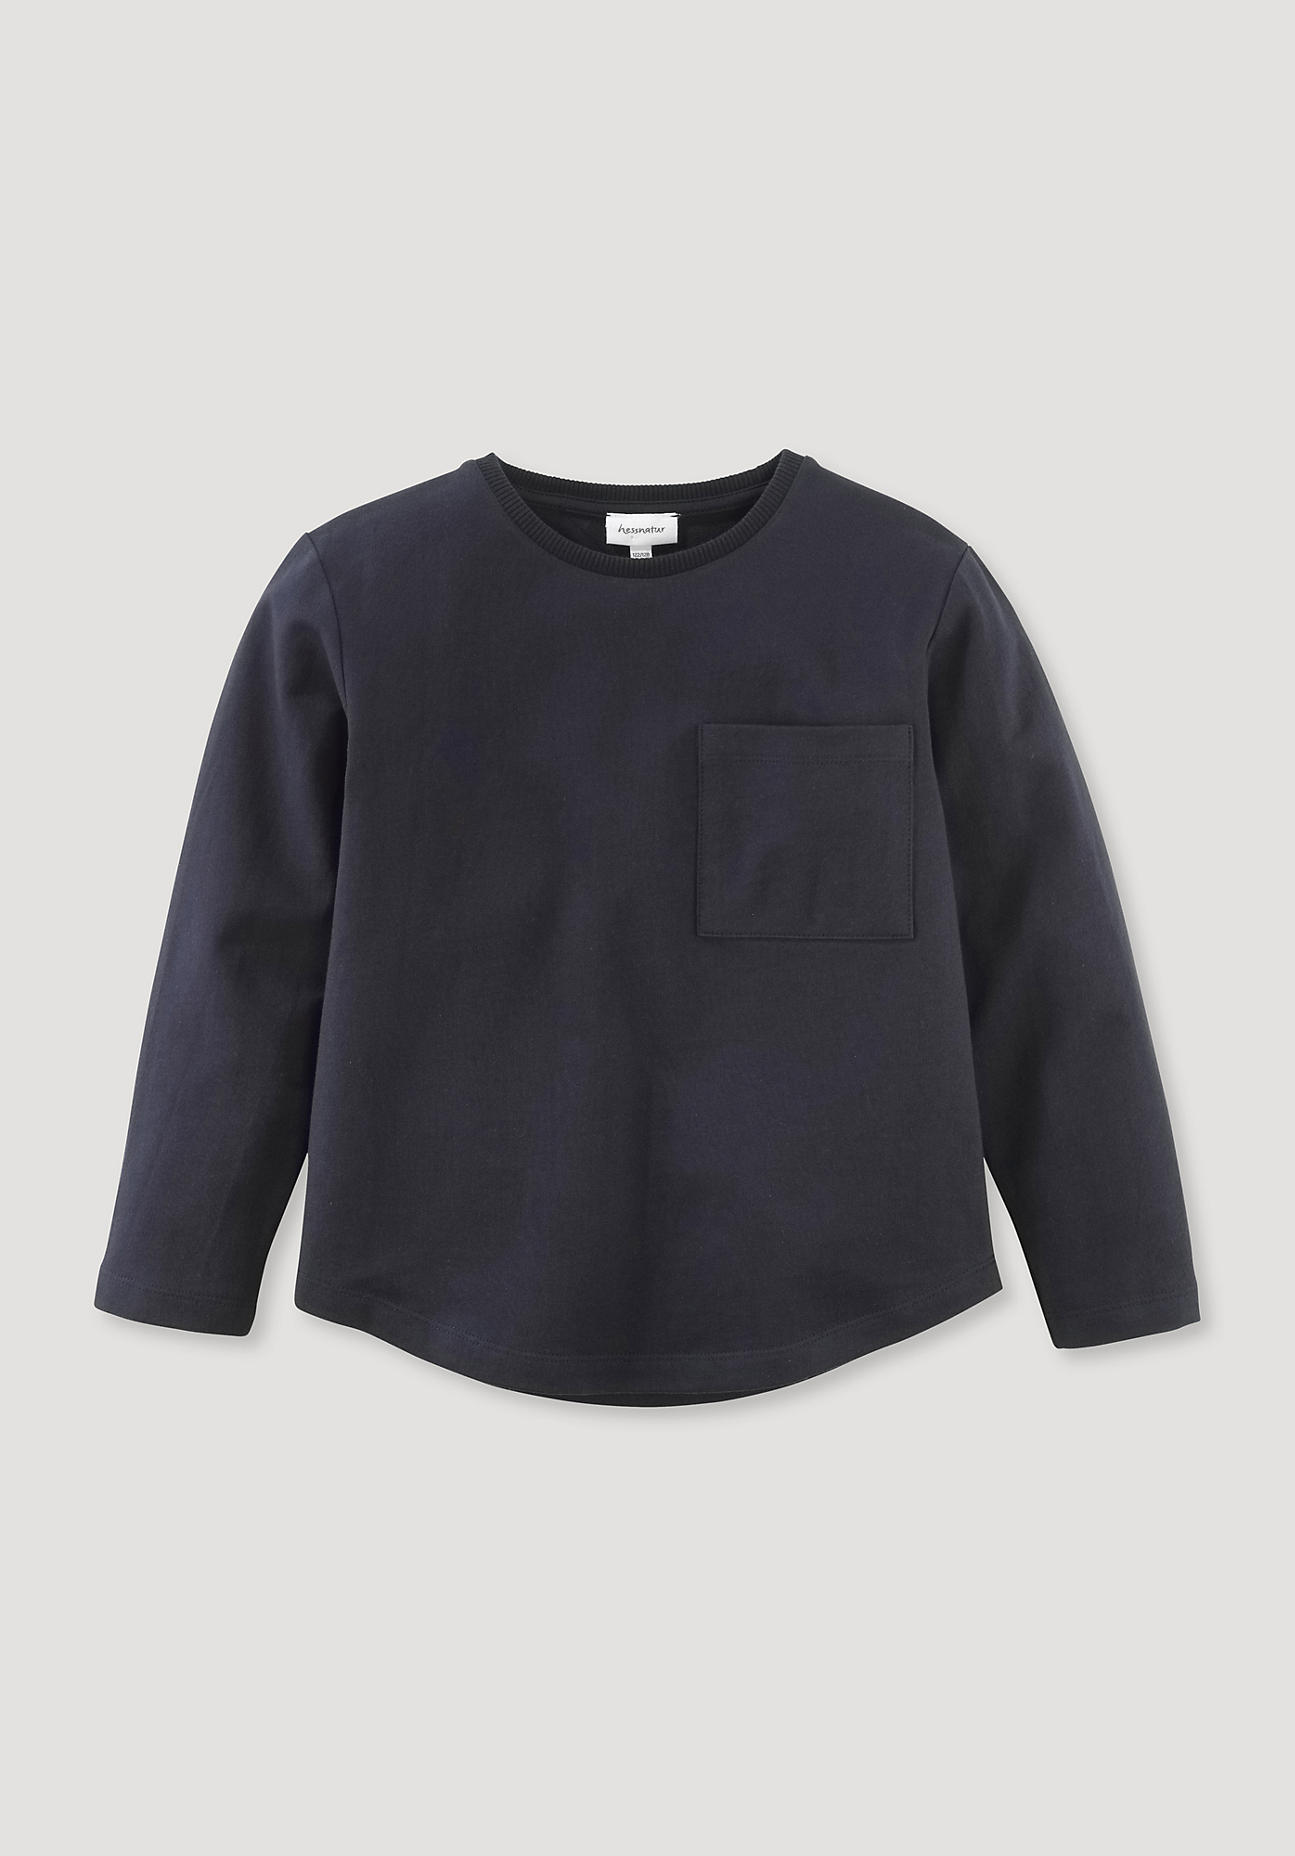 hessnatur Kinder Sweatshirt aus Bio-Baumwolle mit Kapok - blau Größe 134/140